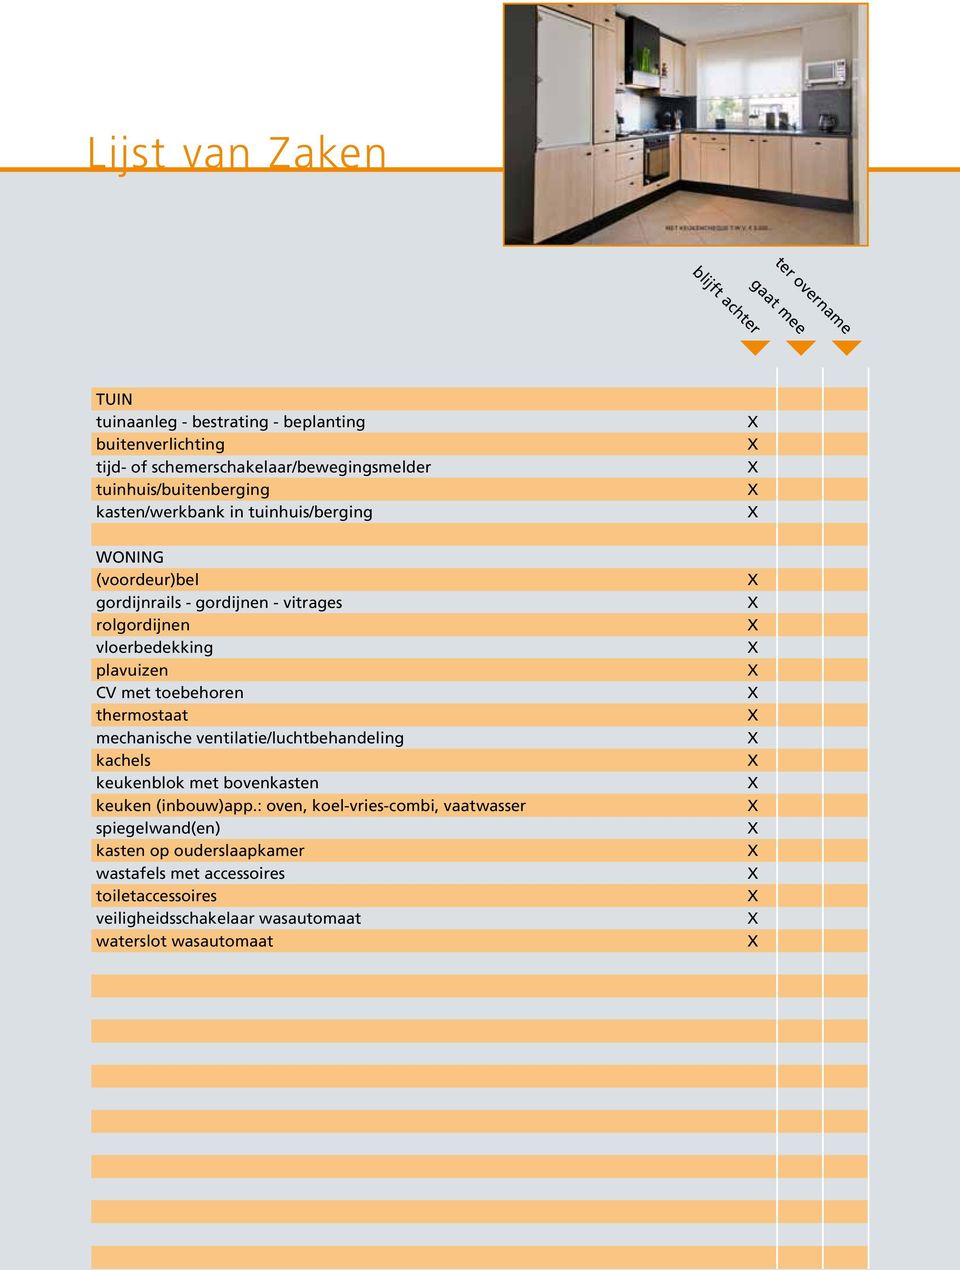 rolgordijnen vloerbedekking plavuizen CV met toebehoren thermostaat mechanische ventilatie/luchtbehandeling kachels keukenblok met bovenkasten keuken